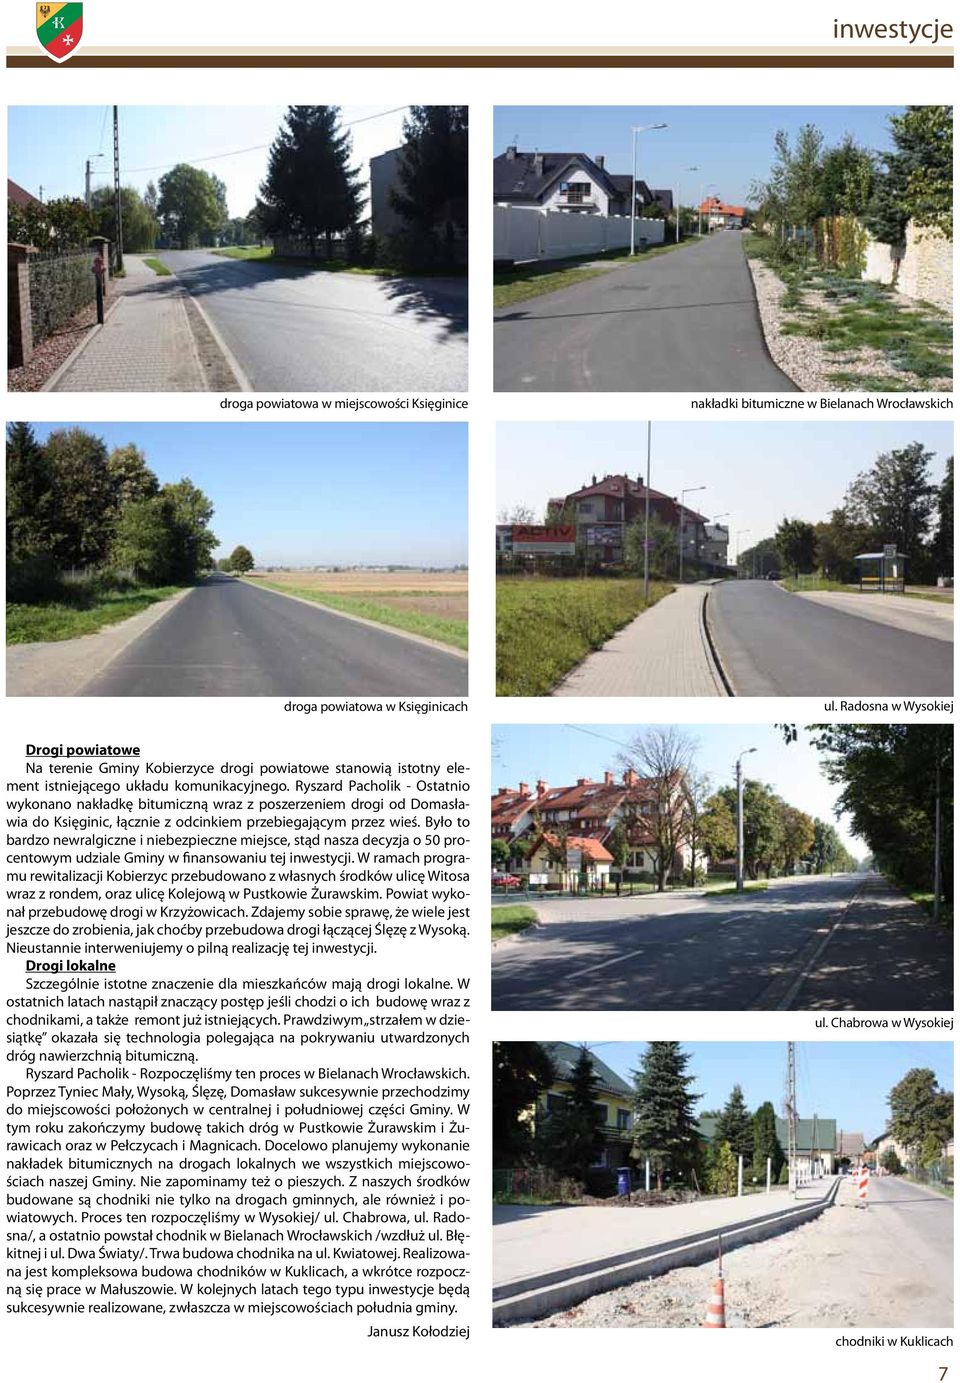 Ryszard Pacholik - Ostatnio wykonano nakładkę bitumiczną wraz z poszerzeniem drogi od Domasławia do Księginic, łącznie z odcinkiem przebiegającym przez wieś.